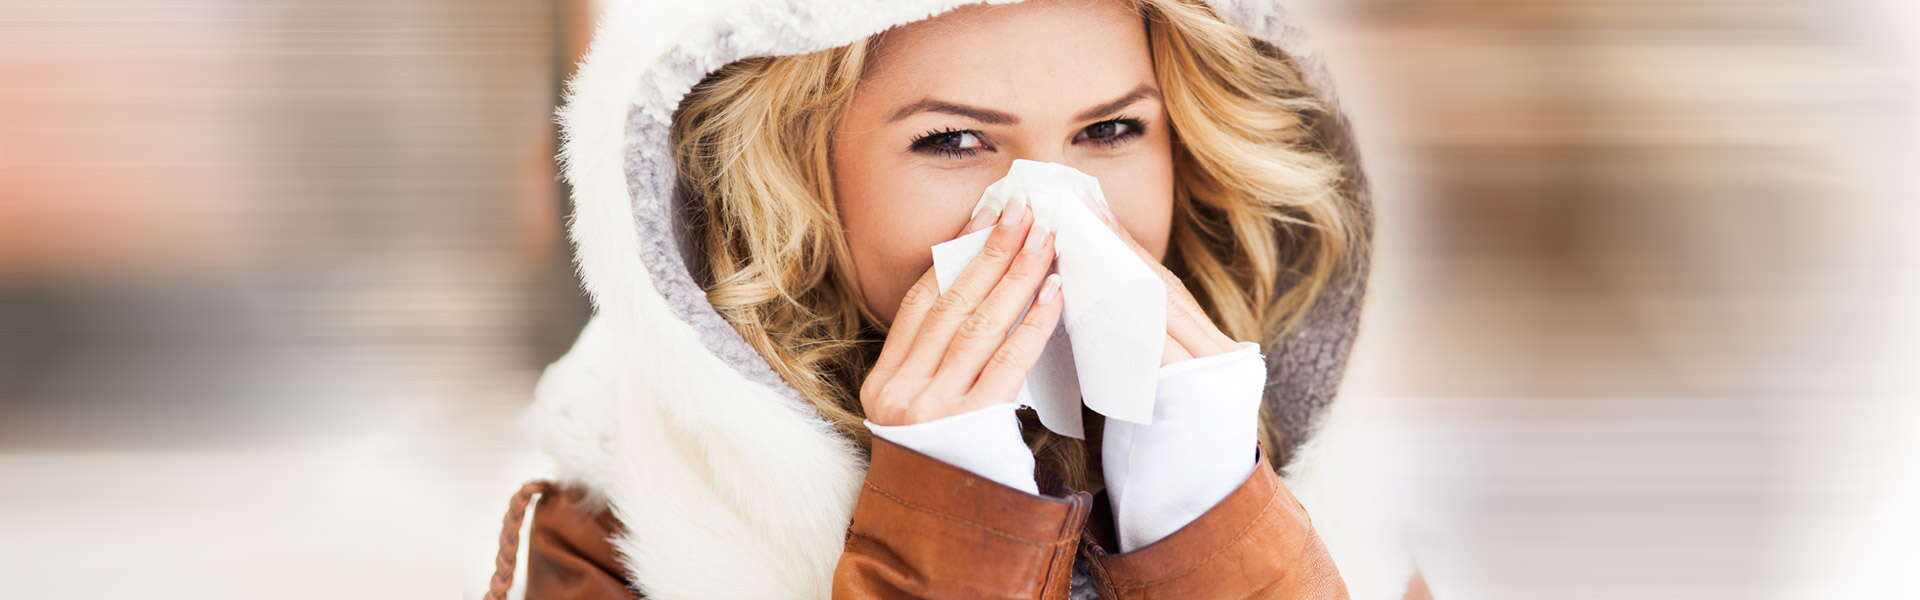 Comment guérir un rhume: symptômes, causes et remèdes